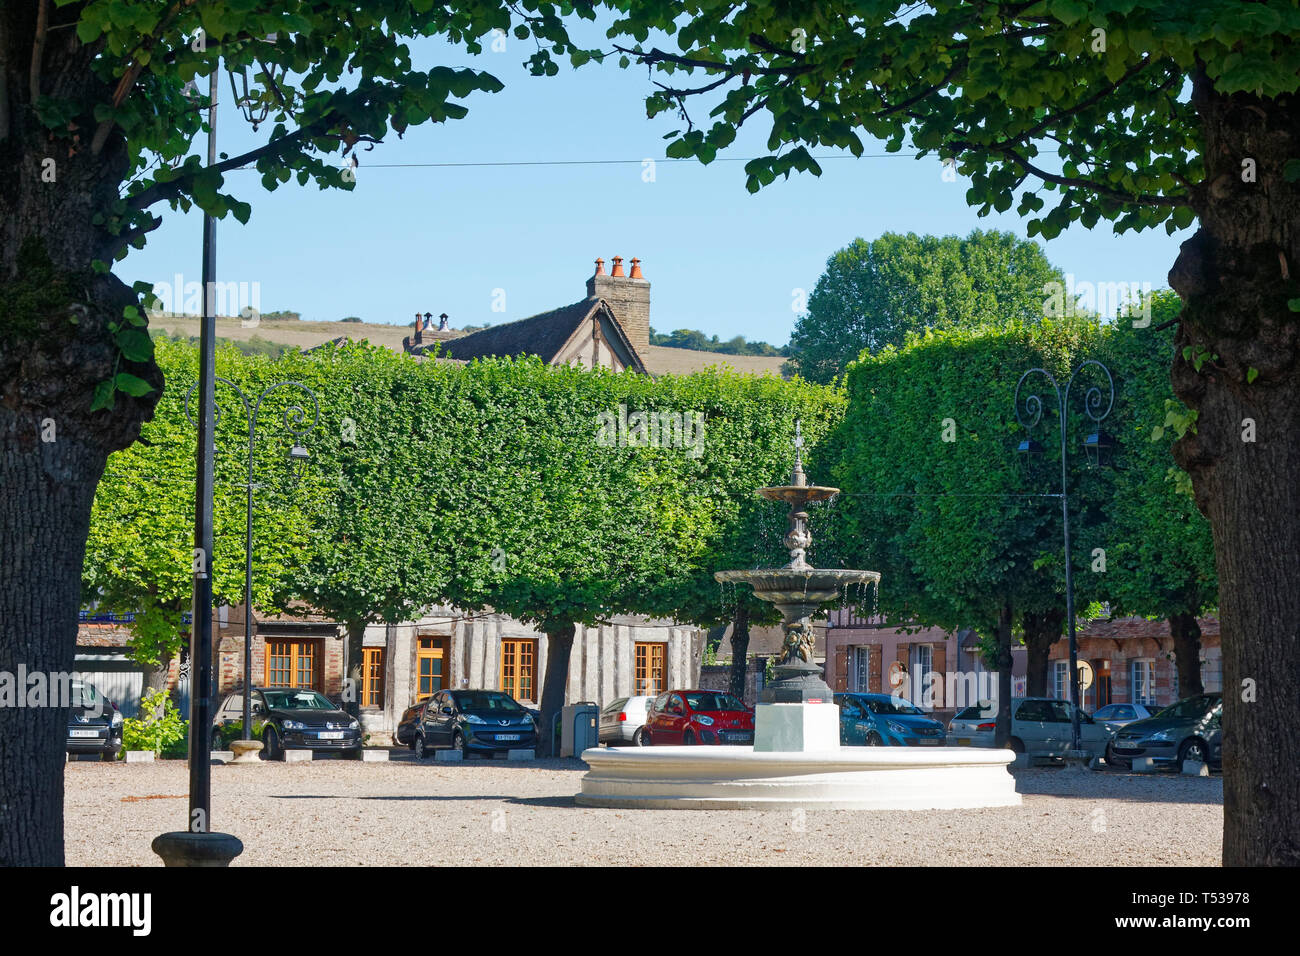 Brunnen; Wasser fließt, Park; Linden; ruhig; kleine Stadt; die Autos geparkt, Les Andelys, Frankreich, Normandie; Sommer; horizontal Stockfoto